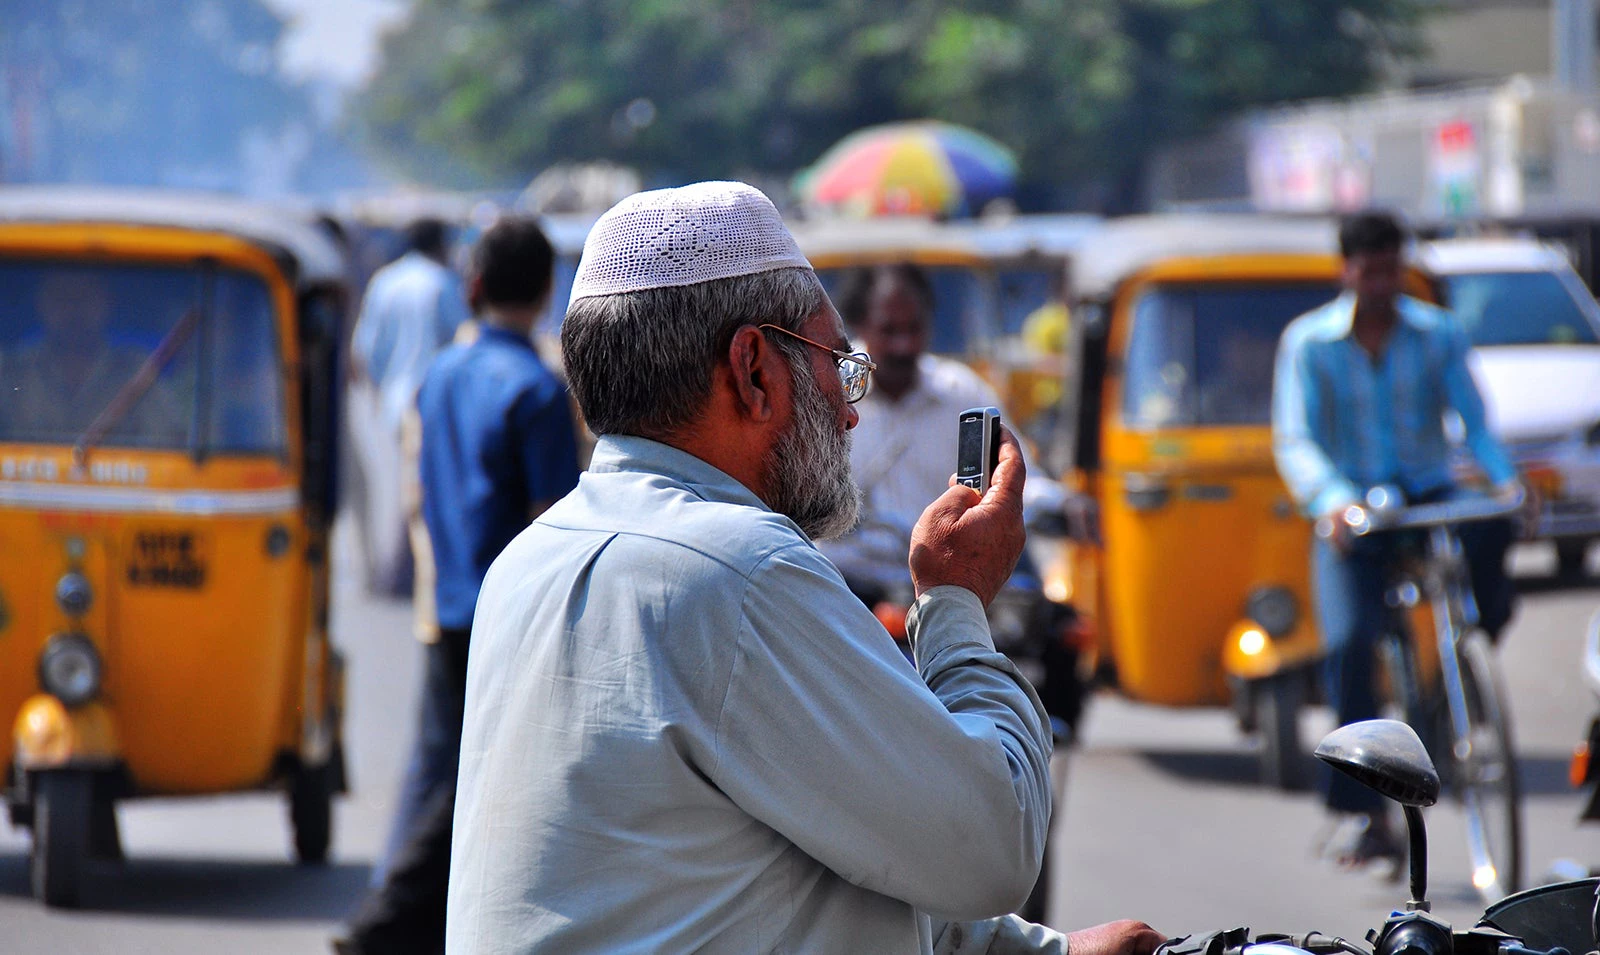 Street scene in Hyderabad, India. Photo: Nietnagel/Flickr